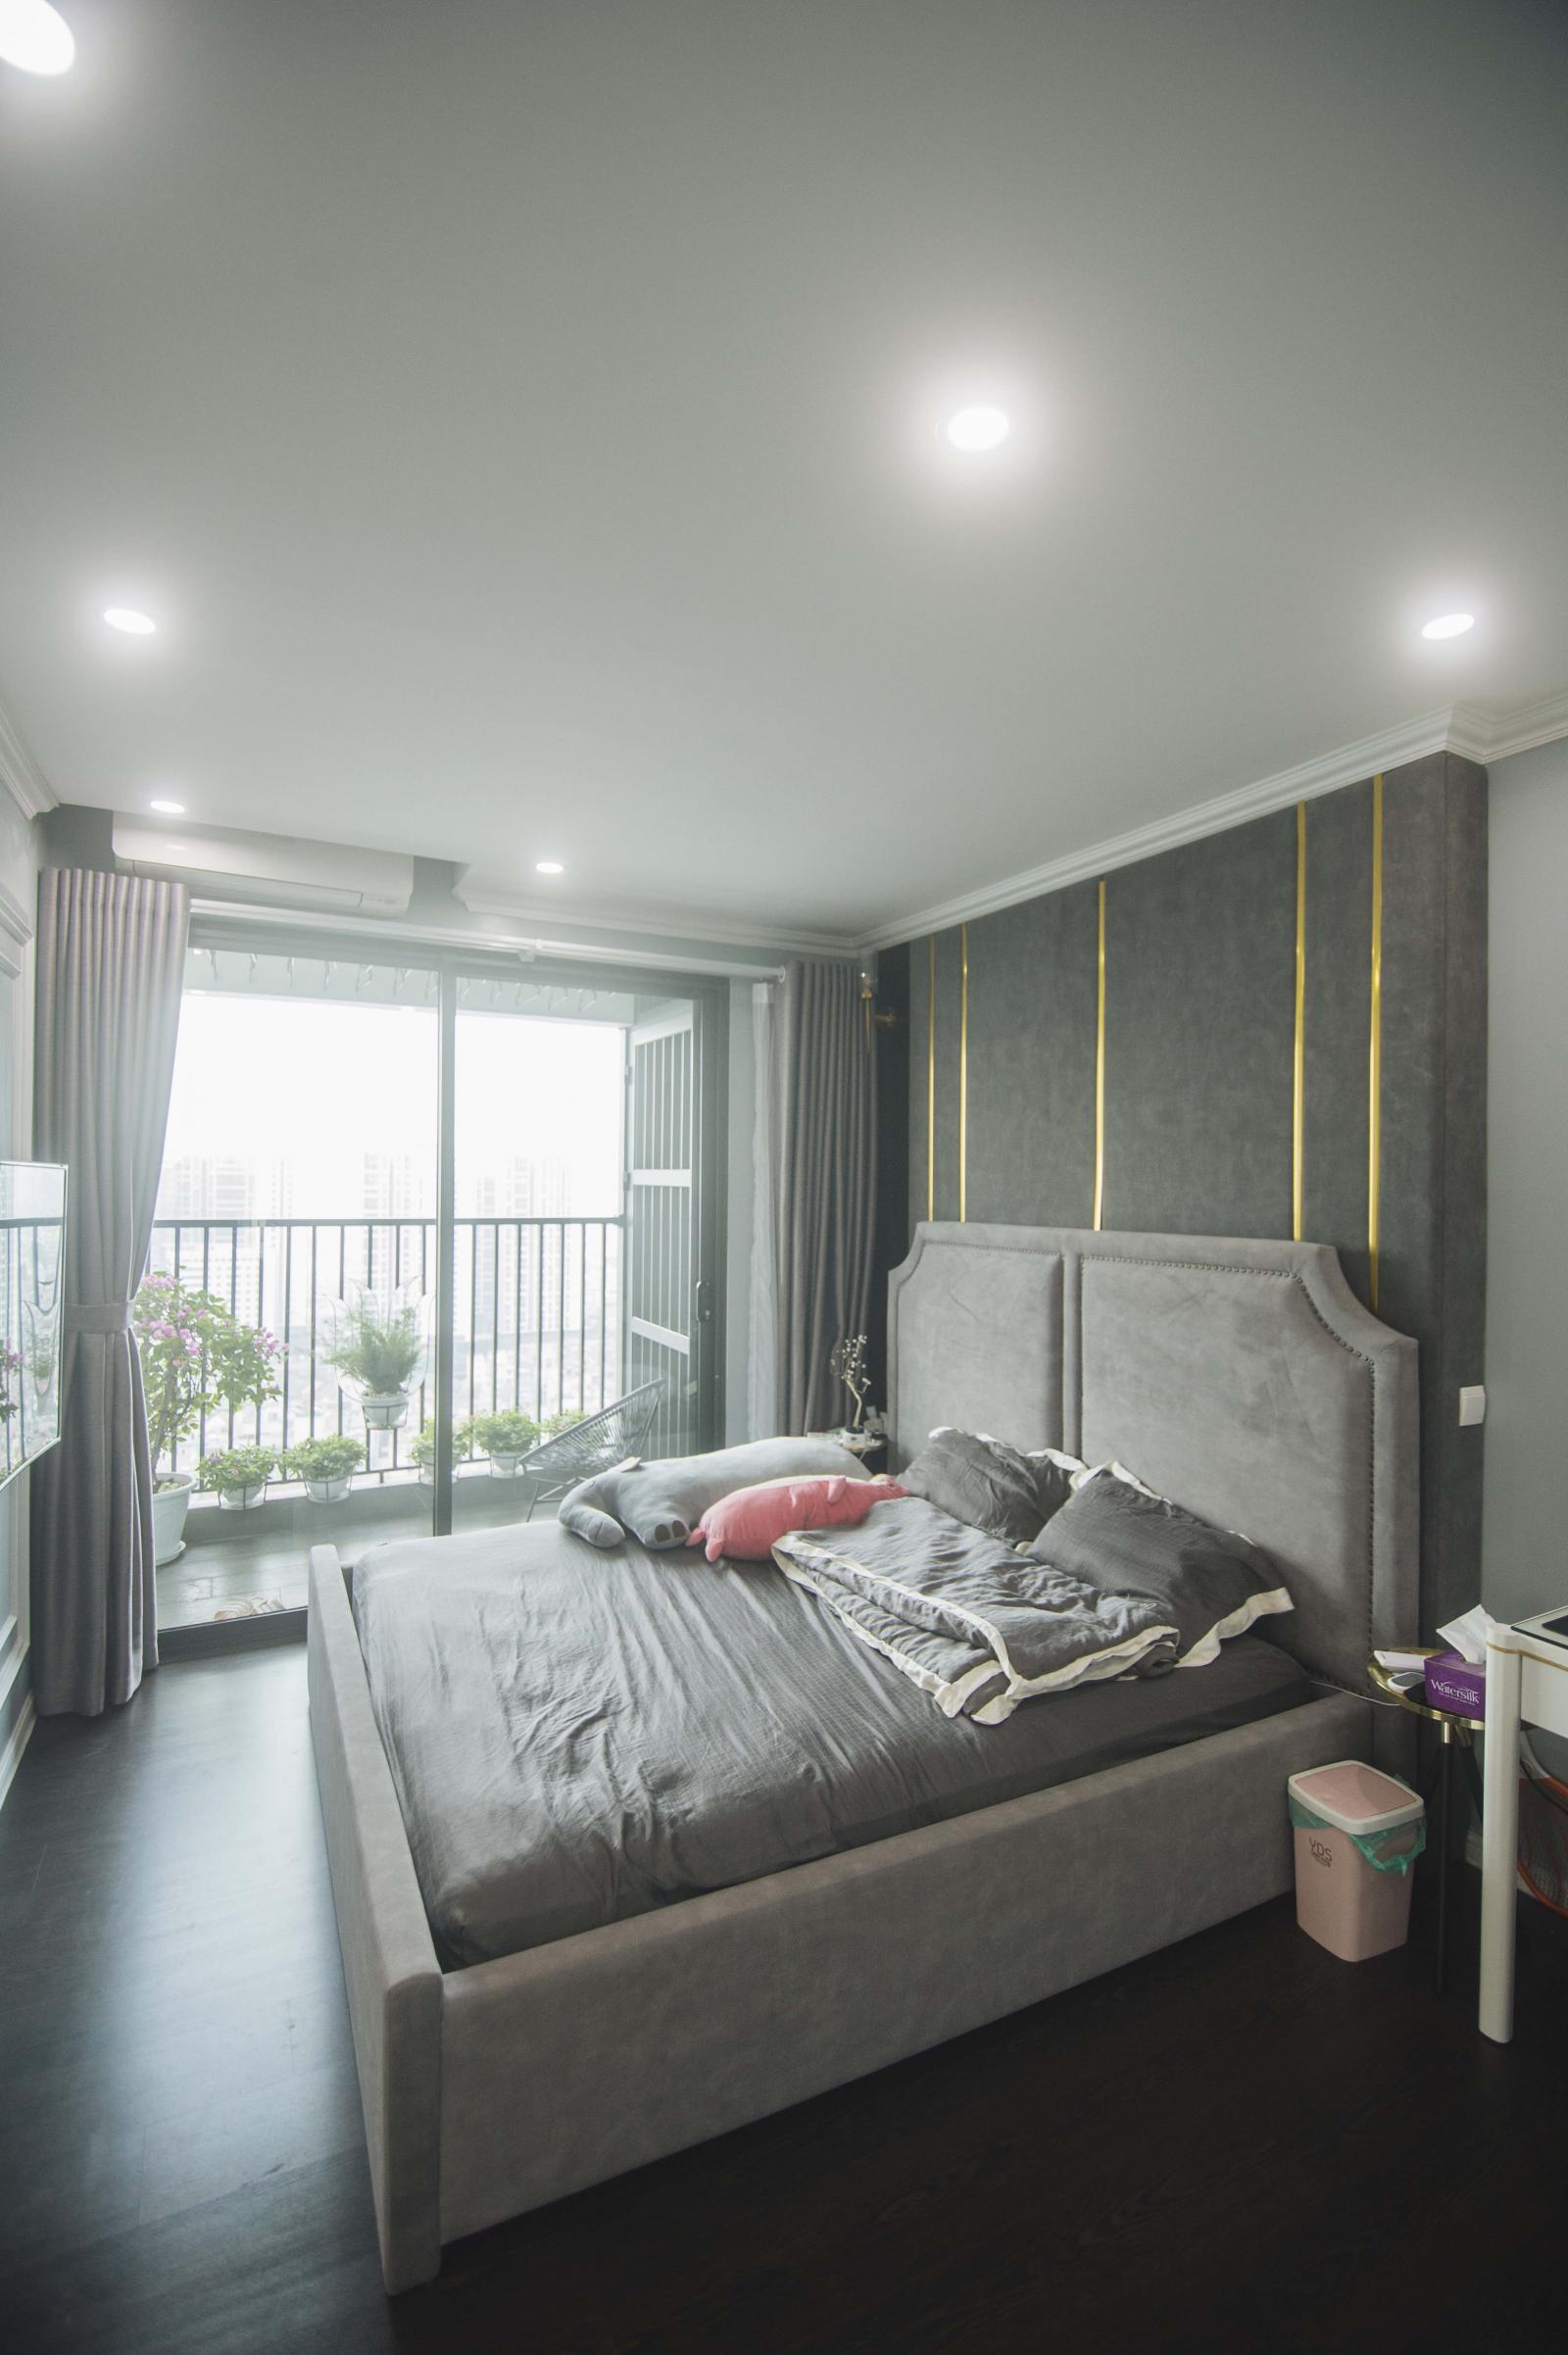 Căn phòng luôn thông thoáng và nhận đủ ánh sáng tự nhiên nhờ khung cửa cao rộng mở ra ban công riêng của phòng ngủ.